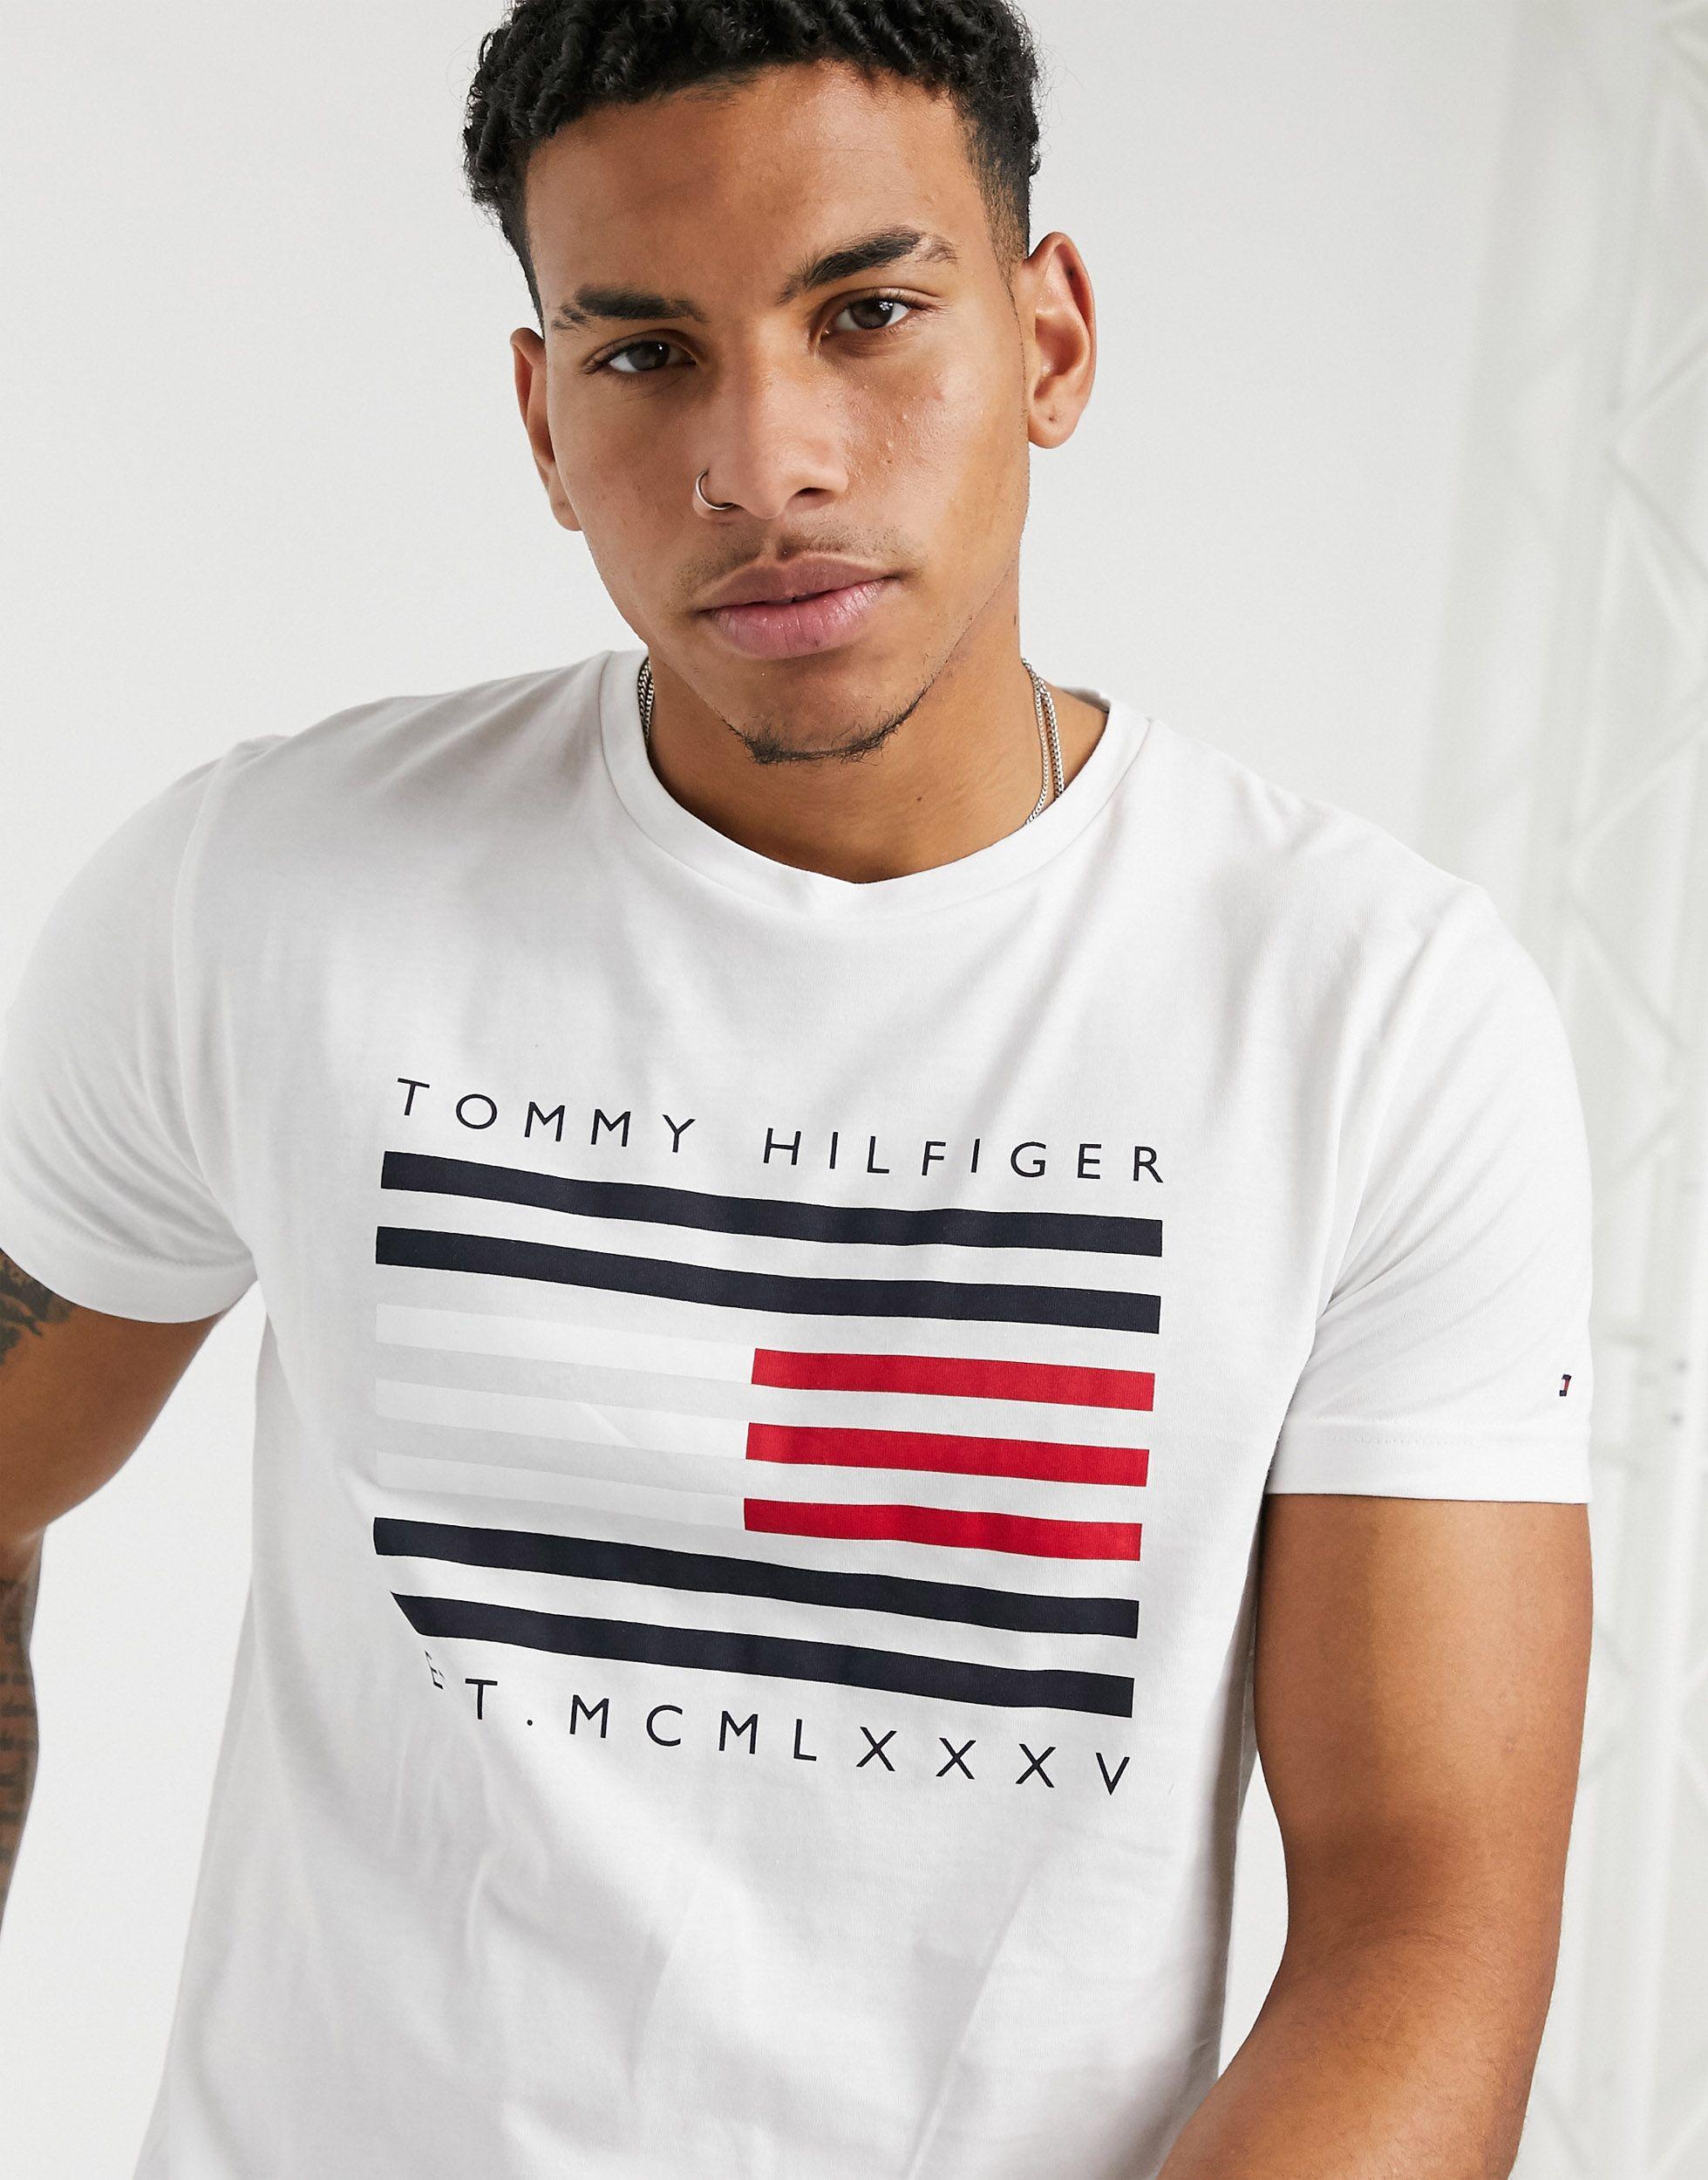 تحول لمحة مدى واسع ضخم مقاطعة علكة tommy hilfiger classic t shirt logo -  mckibbinsscribblins.com